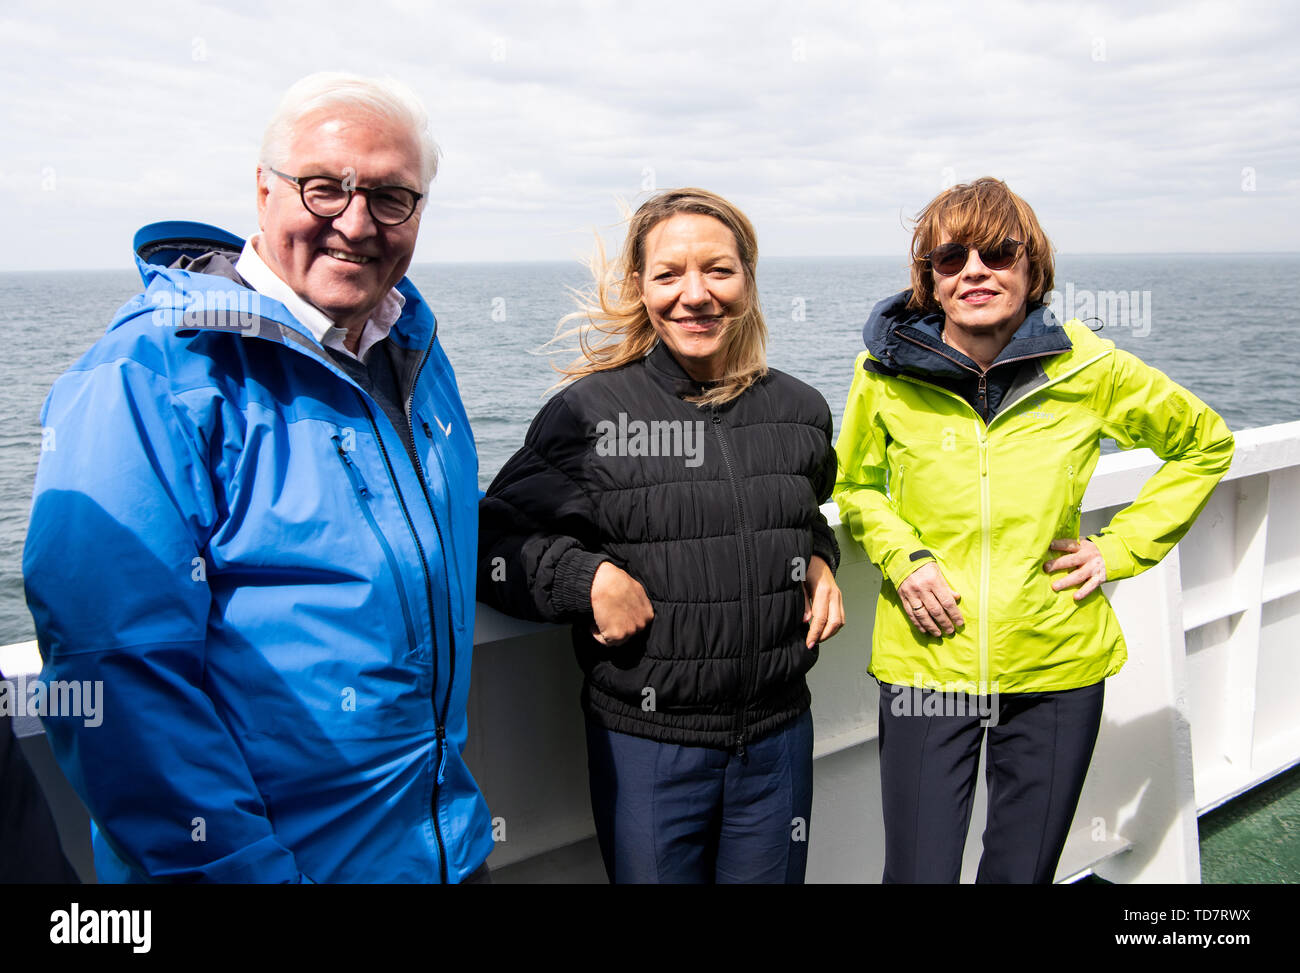 13 juin 2019, l'Islande, l'Westmännerinseln : Président fédéral Frank-Walter Steinmeier (l) et son épouse Elke Büdenbender (r) parler à Antje Boëtius, Directeur de l'Institut Alfred Wegener, sur un ferry pour l'île de Heimaey sur l'Îles Westman. Boëtius est l'invité du président fédéral pendant le voyage. Président M. Steinmeier et son épouse sont sur une visite d'Etat de deux jours à l'Islande. Photo : Bernd von Jutrczenka/dpa Banque D'Images